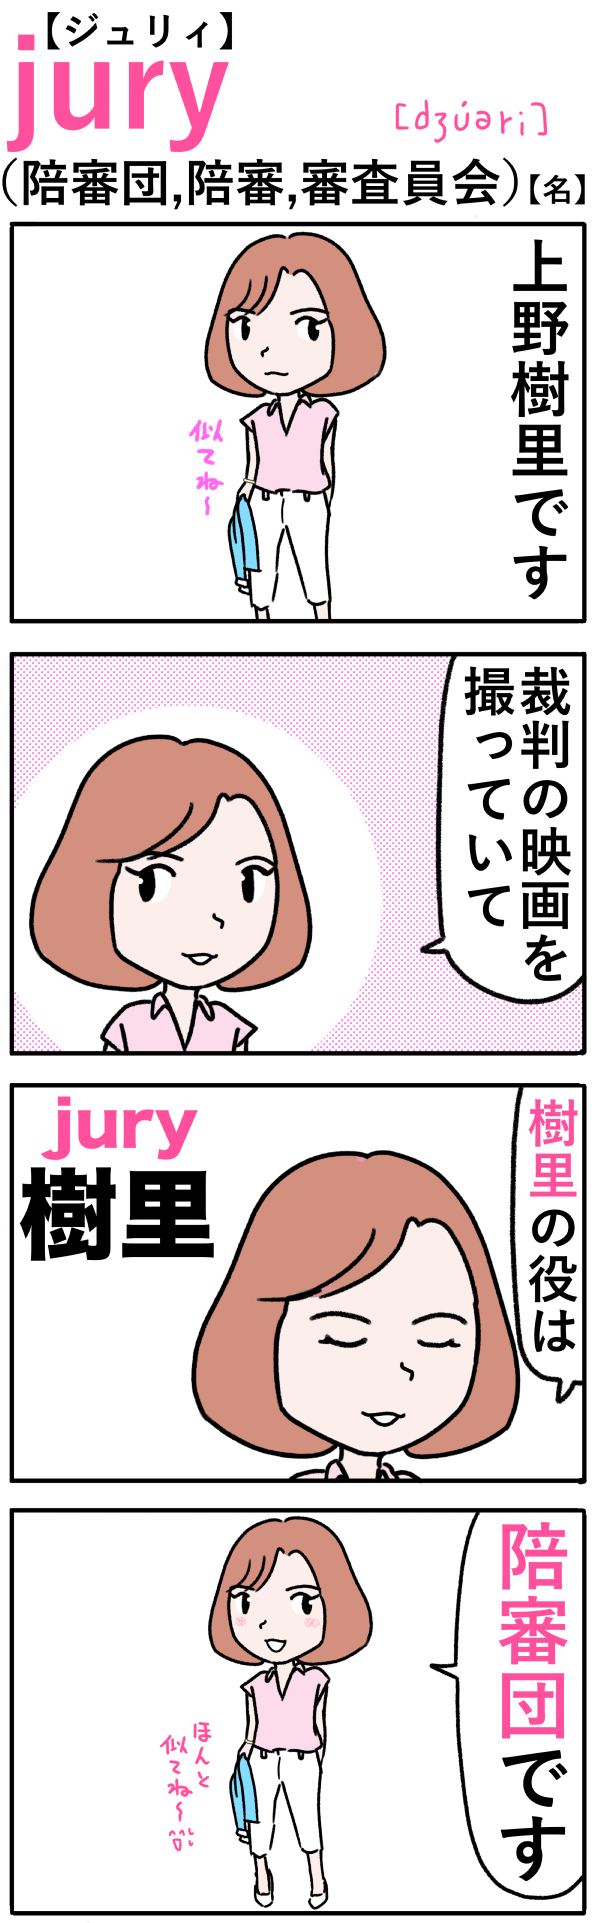 jury（陪審団）の語呂合わせ英単語